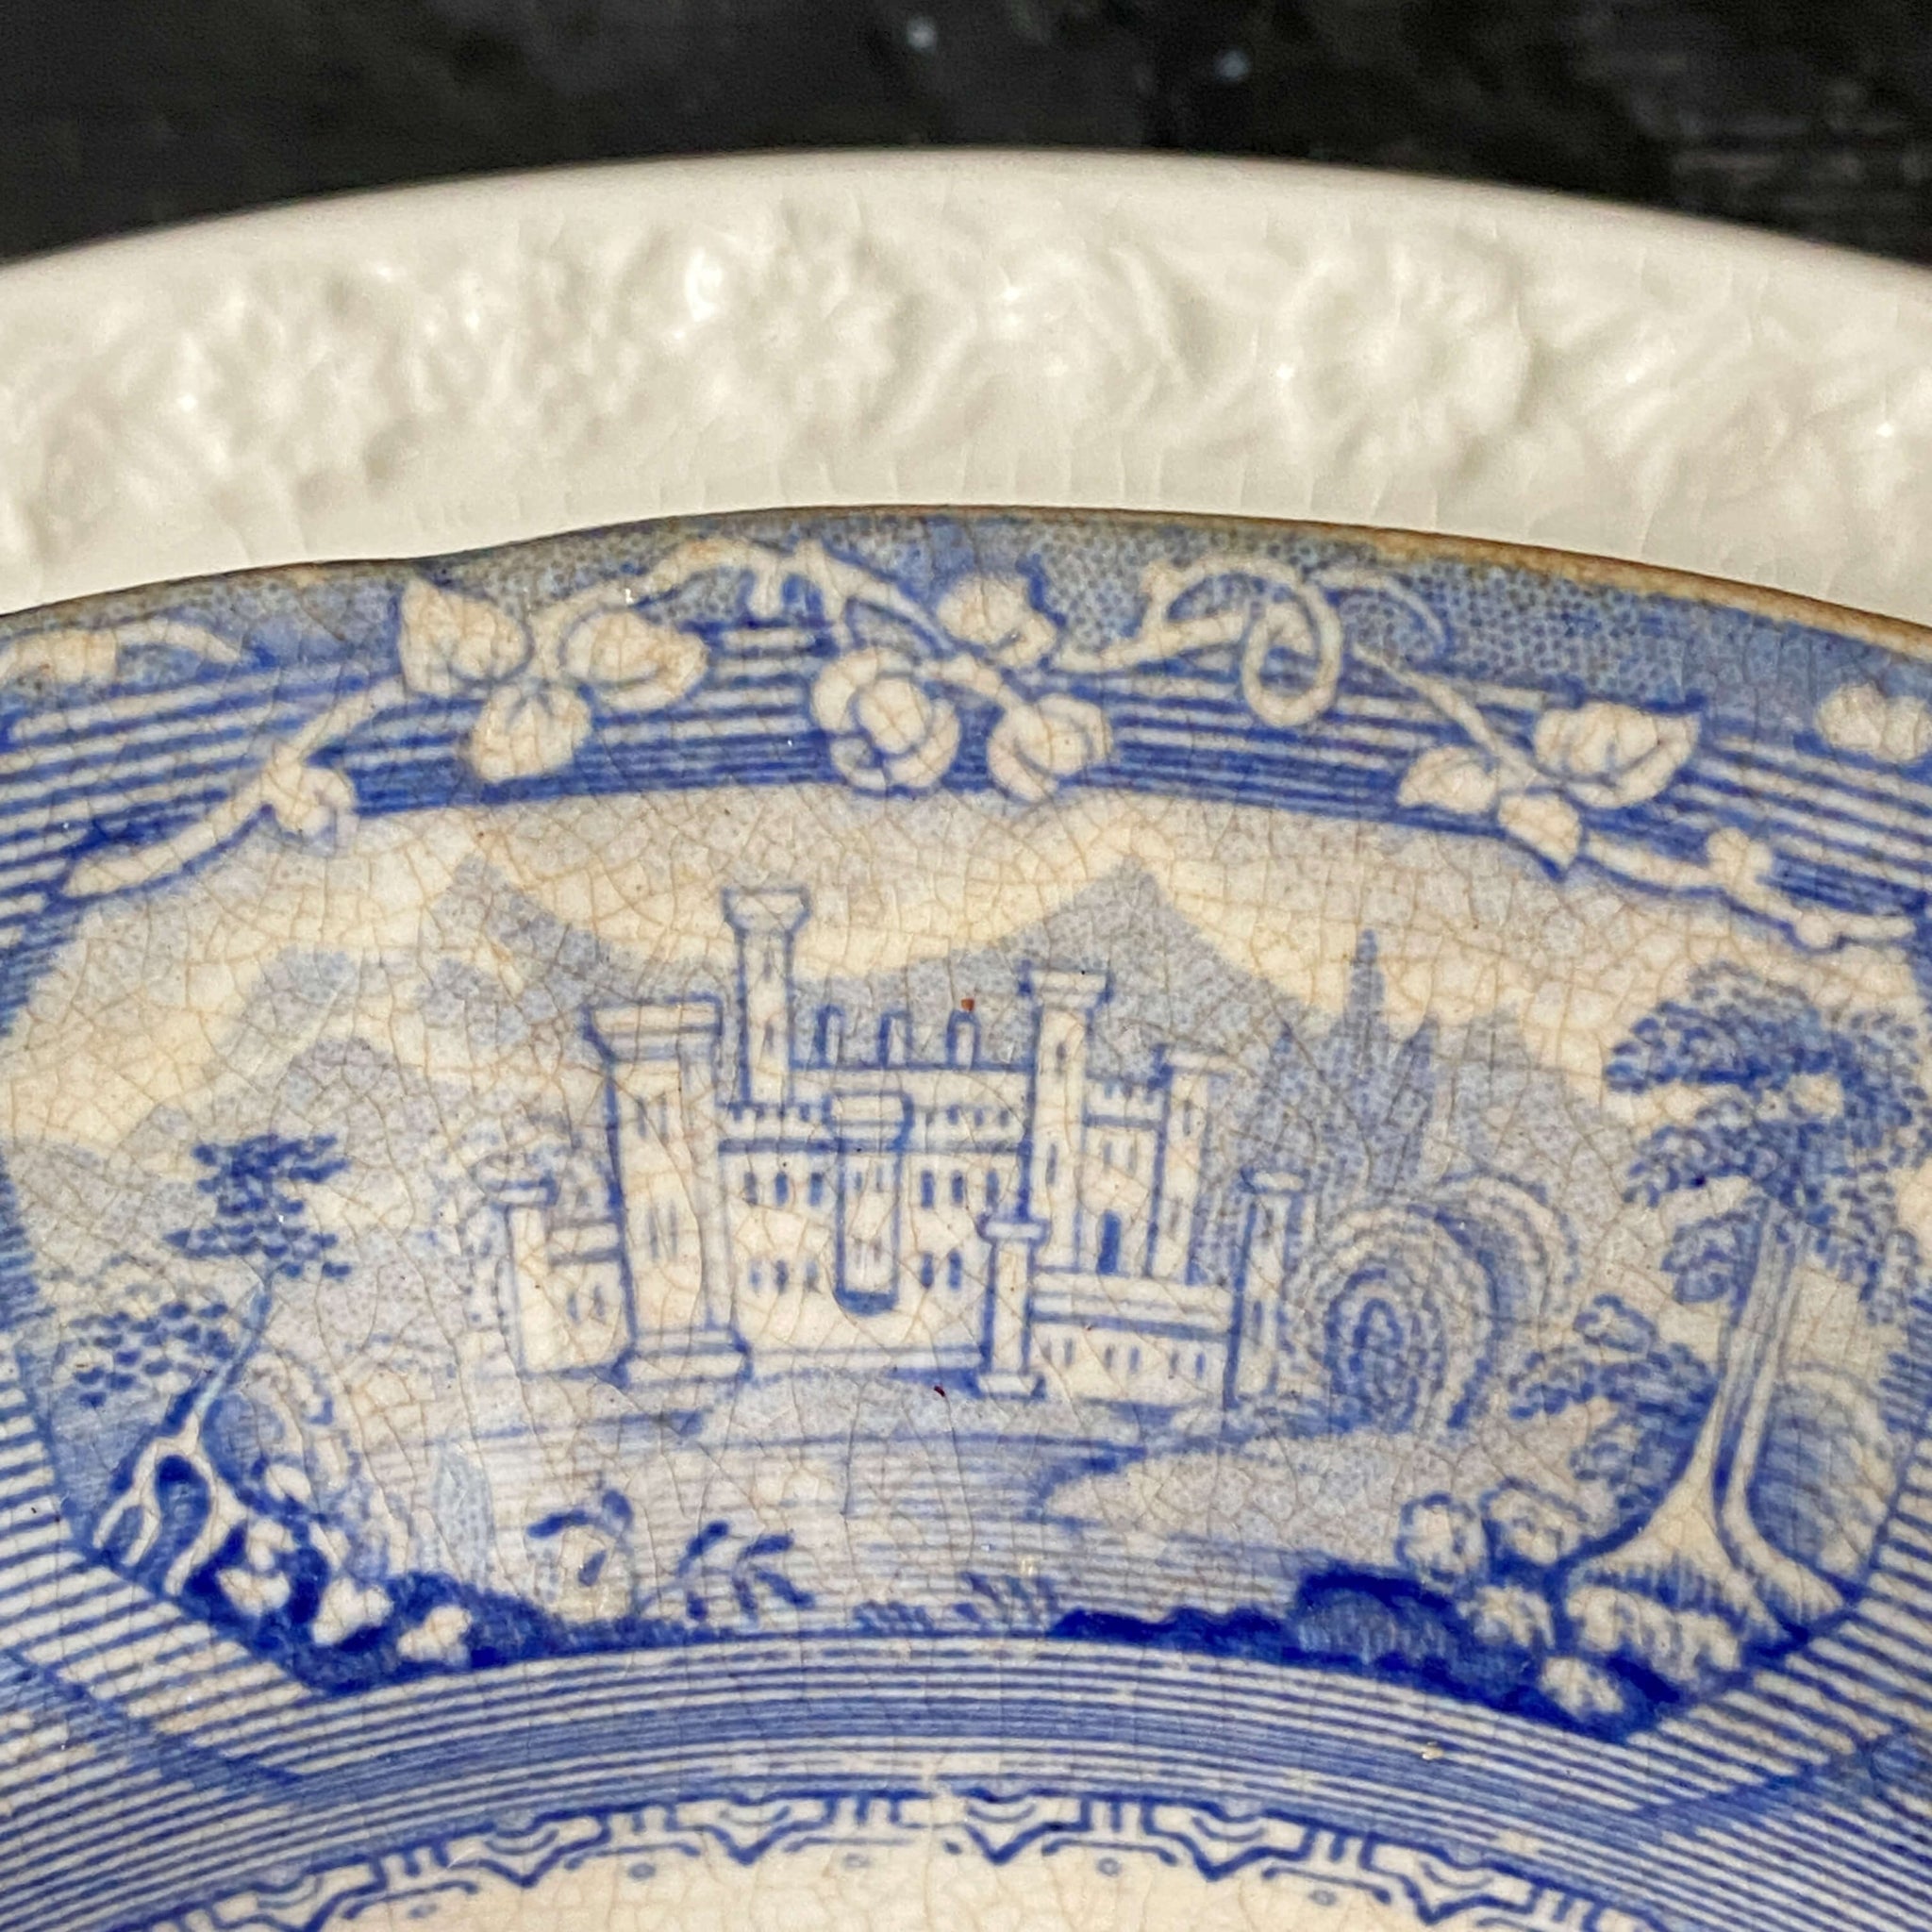 Rare Antique T.J. & J Mayer Florentine Soup Bowl circa 1843-1855